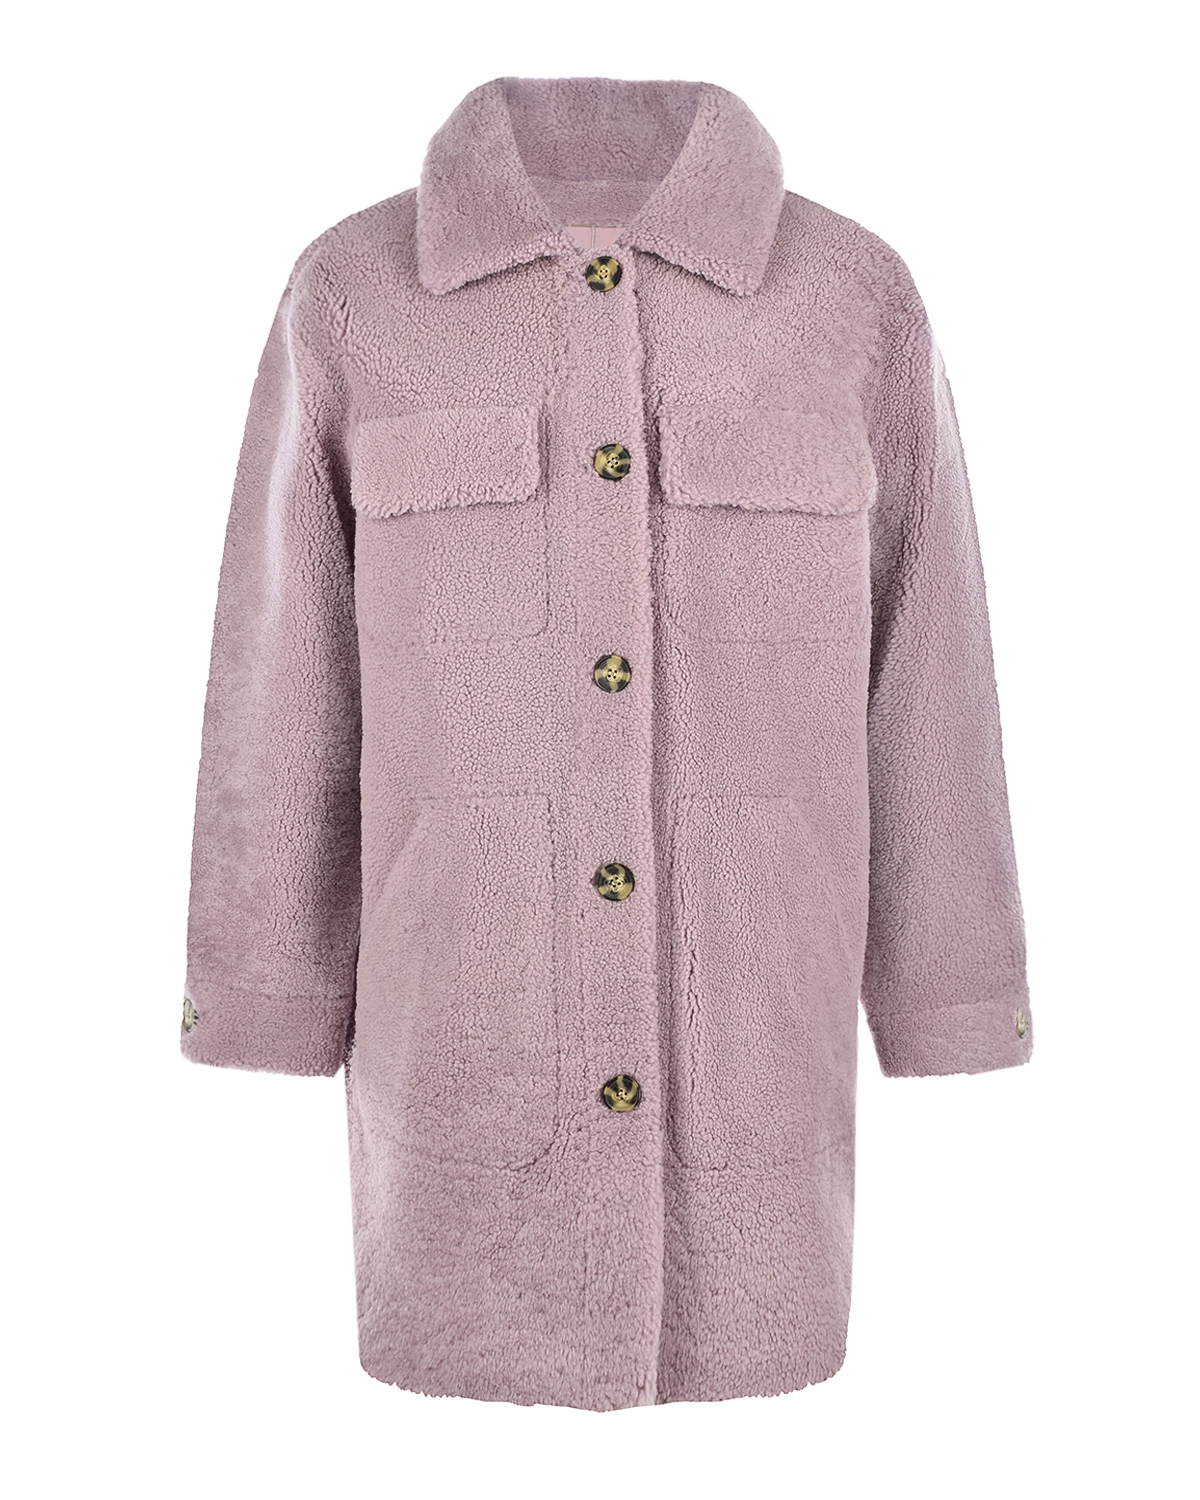 Двухстороннее сиреневое пальто-дубленка Yves Salomon, размер 34, цвет сиреневый